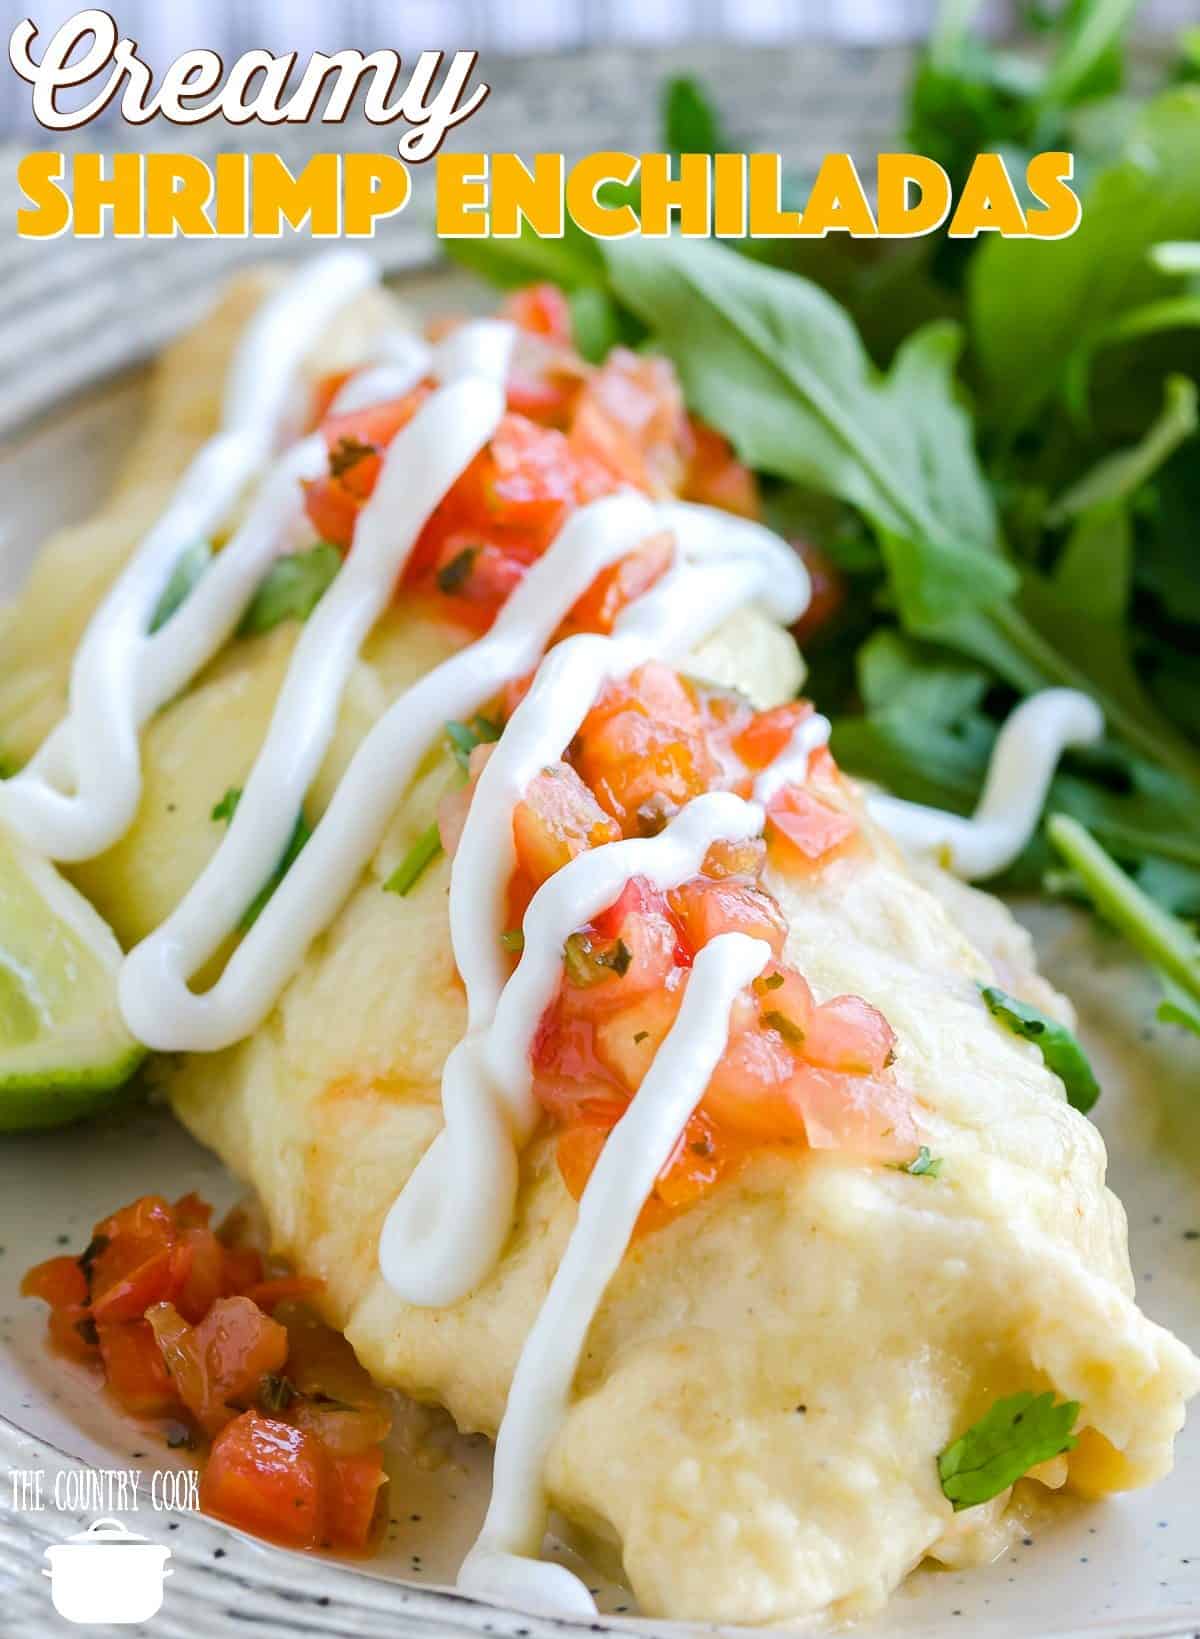 Easy Creamy Shrimp Enchiladas recipe from The Country Cook